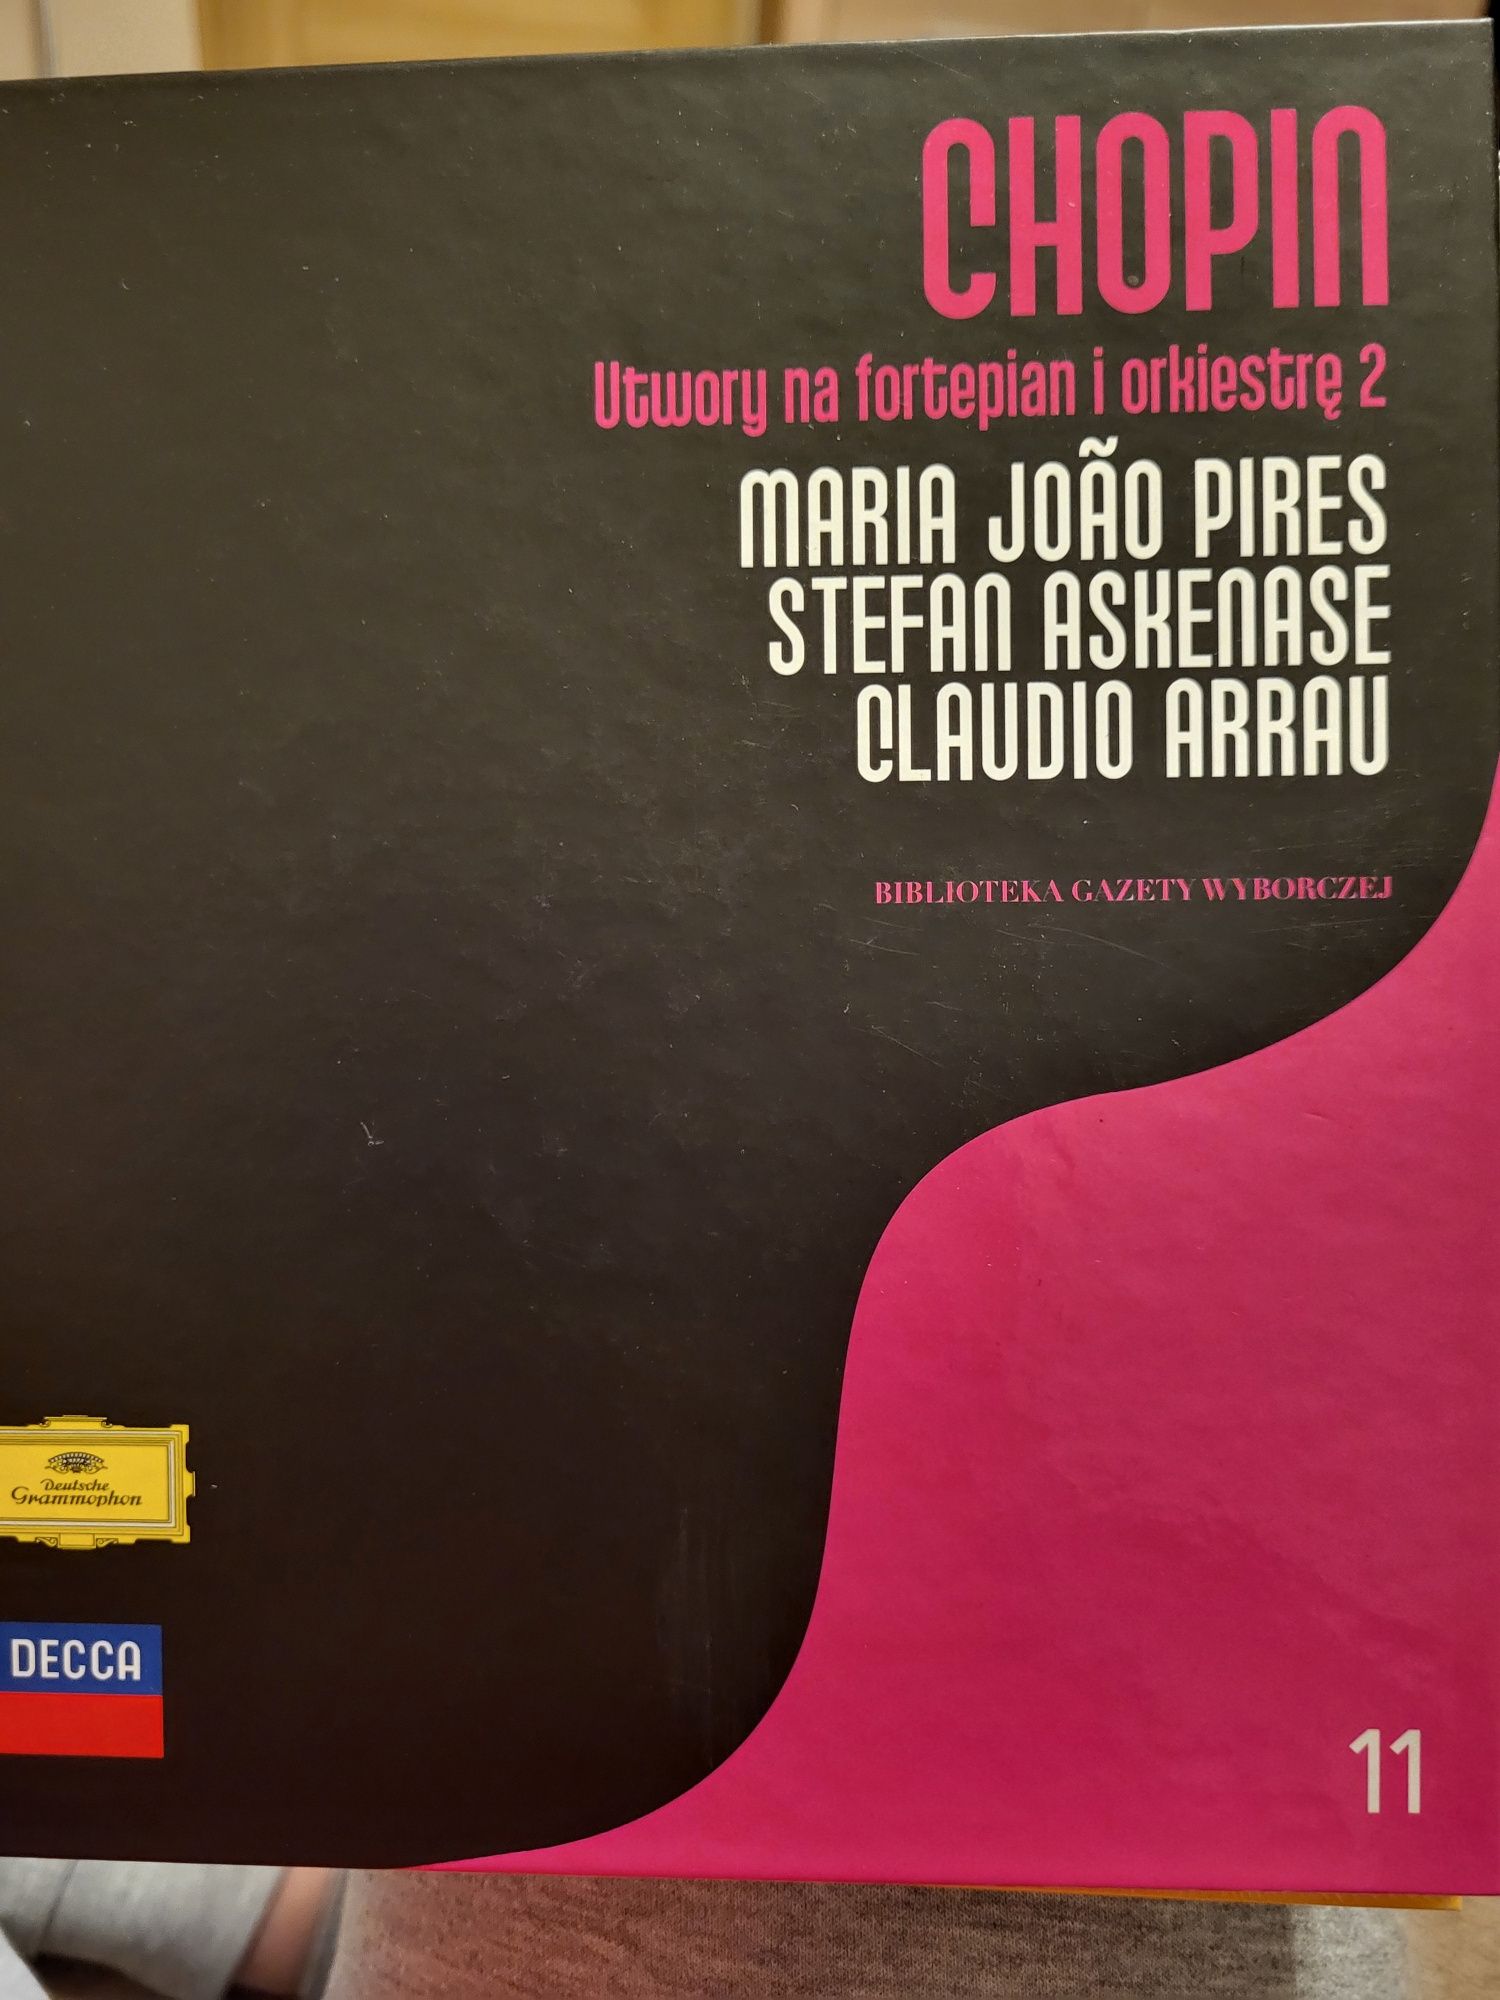 Chopin -biblioteka gazety wyborczej